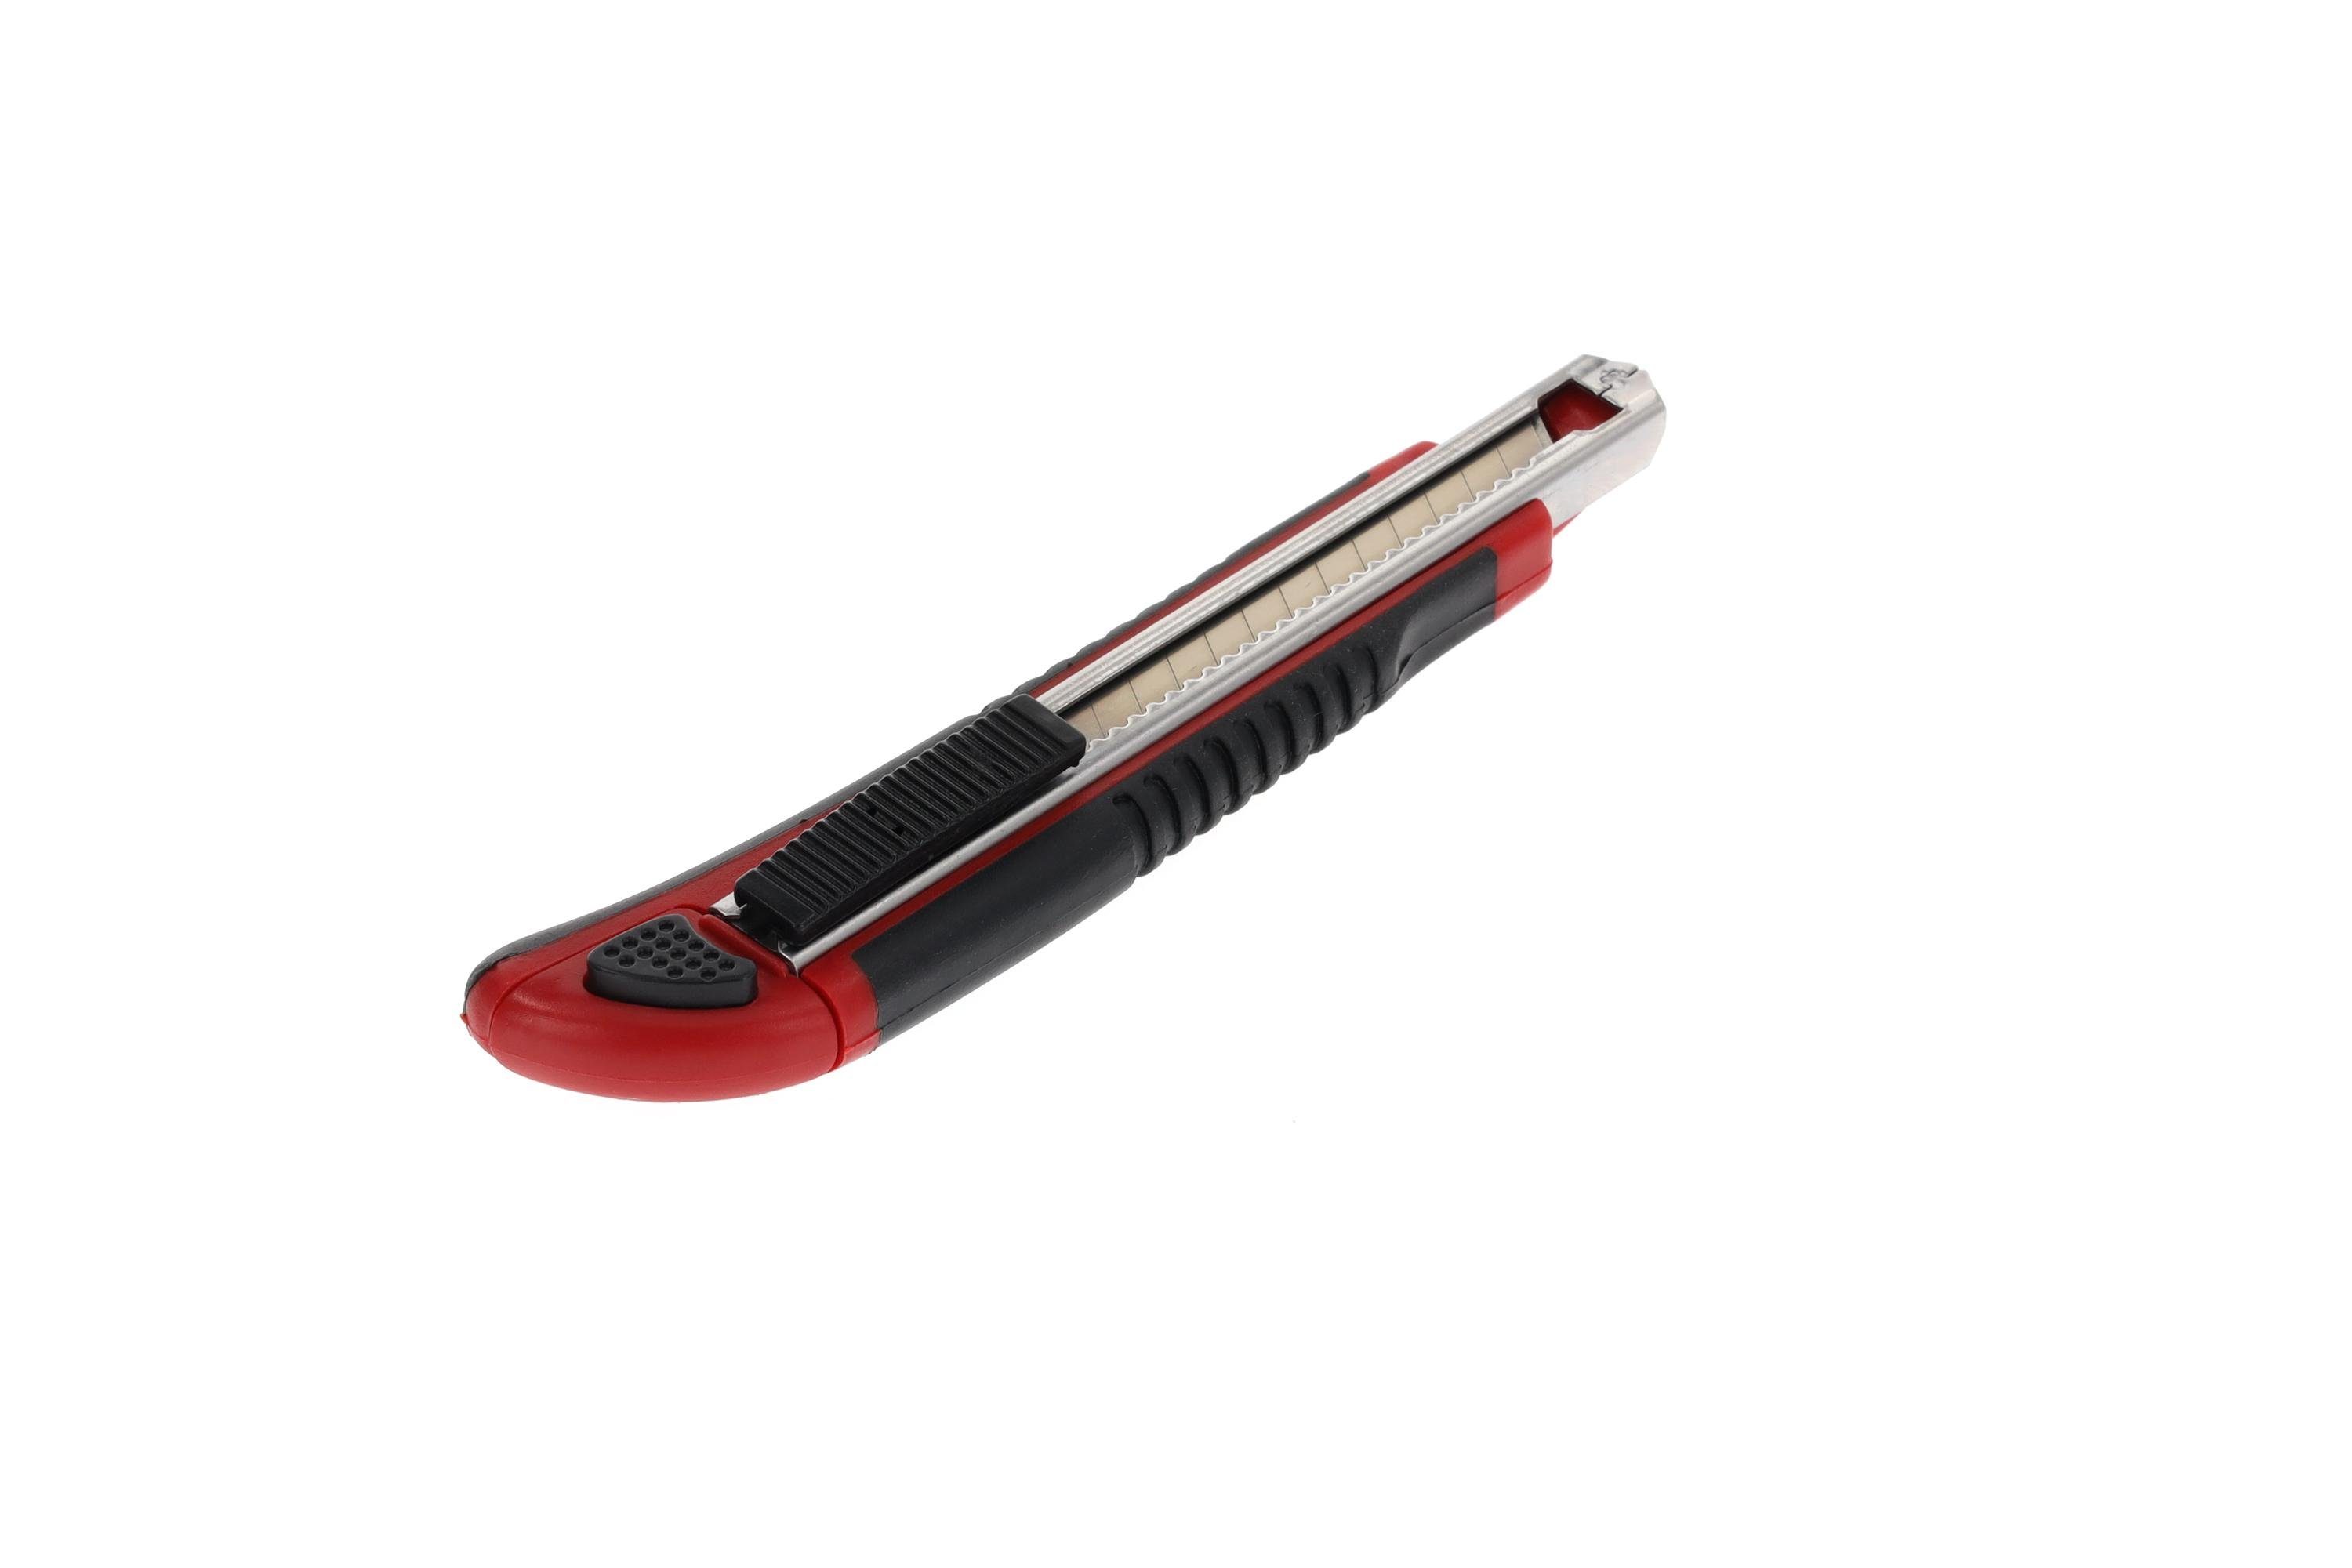 Gedore Red Cuttermesser Cuttermesser 5 mm R93200010 9 Klingenbreite